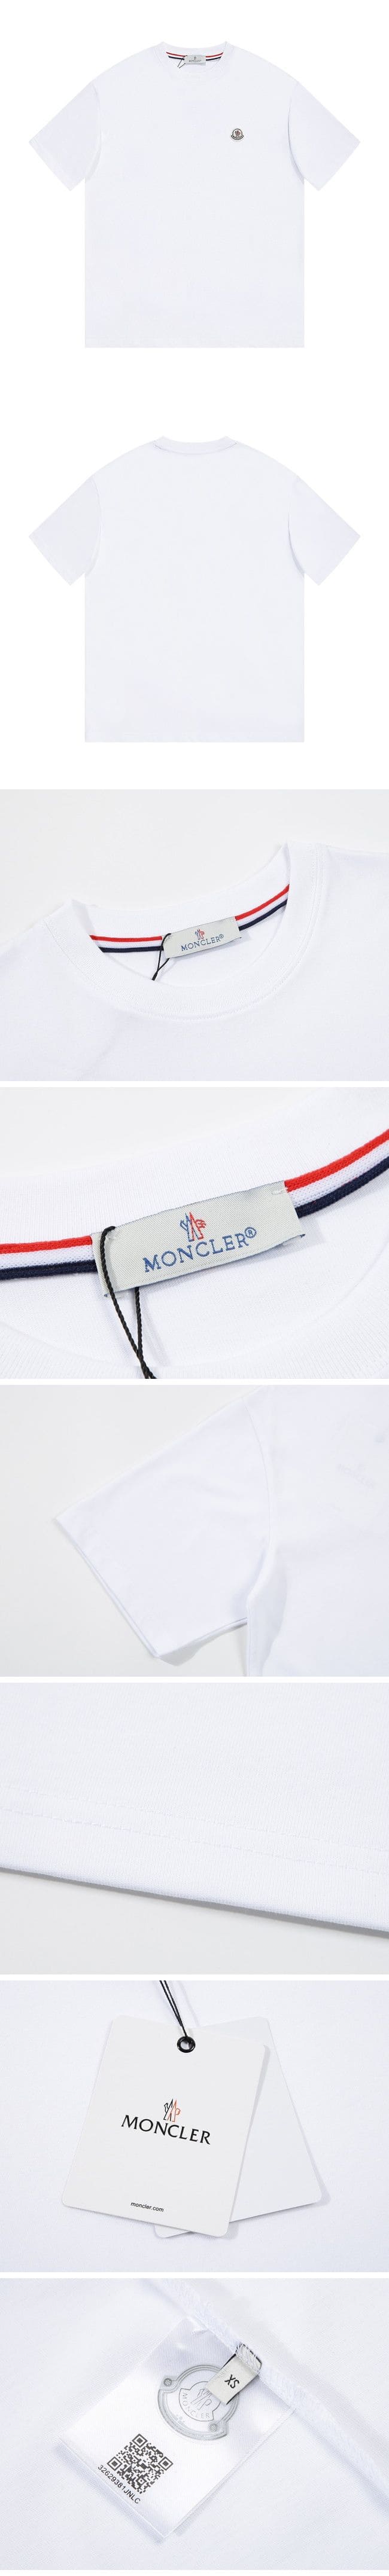 Moncler Basic Logo Tee モンクレール ロゴ Tシャツ ホワイト